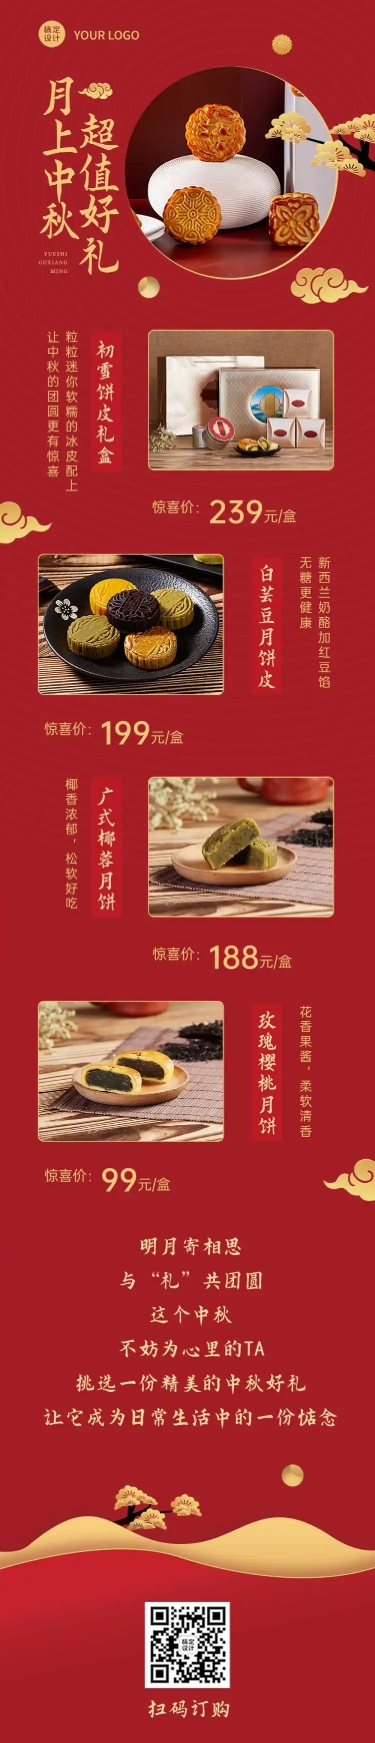 中秋餐饮美食节日营销中国风长图预览效果